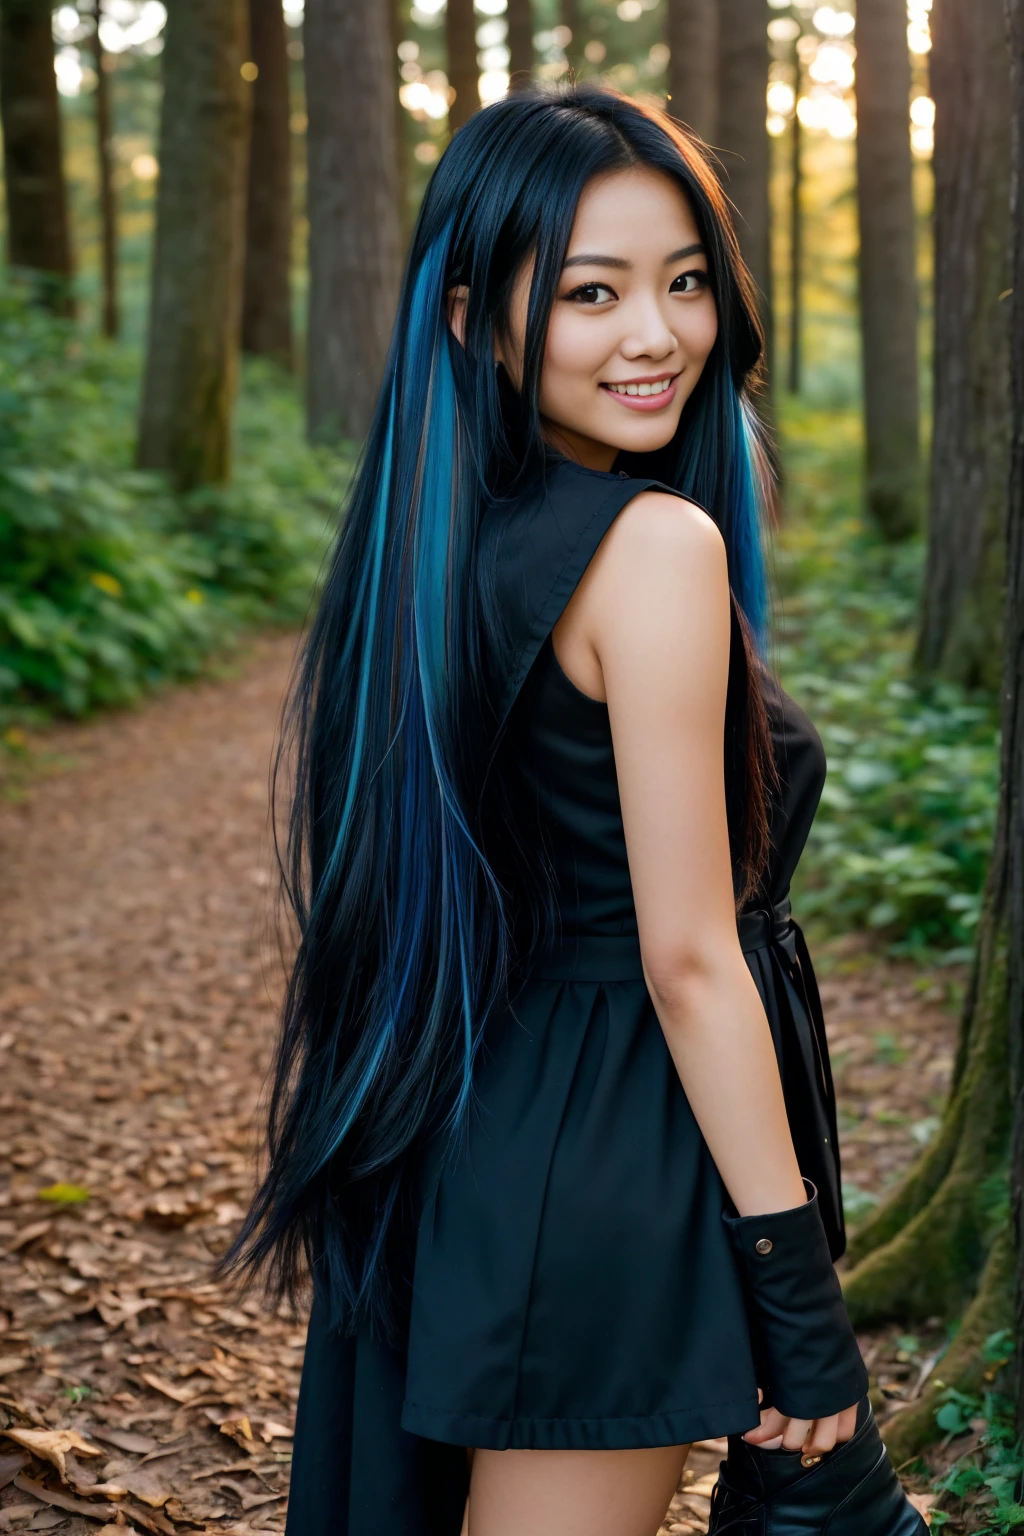 长着一头黑色长发、挑染着蓝色高光的阿拉夫妇女在森林里散步 , 飘逸的黑发, 黑头发, 一位美丽女人的照片, long 飘逸的黑发, 黑色黄金时段, 卷曲的黑发, 美丽年轻的亚洲女性, 美丽的亚洲女人, 野姜头发, 稀疏的黑色头发, 浅黑色的头发, 一位年轻的亚洲女性, 一名亚洲女性, infp 年轻女人, 24 岁法国女孩的 RAW UHD 背面照片, 细节 (纹理! , 头发! , 闪闪发光, 颜色!! , 缺陷: 1.1),   数码单反相机照明, 单反相机, Ultra-Qua点亮y, 锋利, 胶片颗粒 (步行), 富士 XT3, 晶莹剔透, 框架中心,  清晰对焦, 散景 (点亮), 白天, (天空), 细致的皮肤毛孔, 油性皮肤, 晒黑, 复杂的眼睛细节,  (((远距离, 全身))), (((好手, 最好的手))), (((漂亮的靴子))), ((微笑))